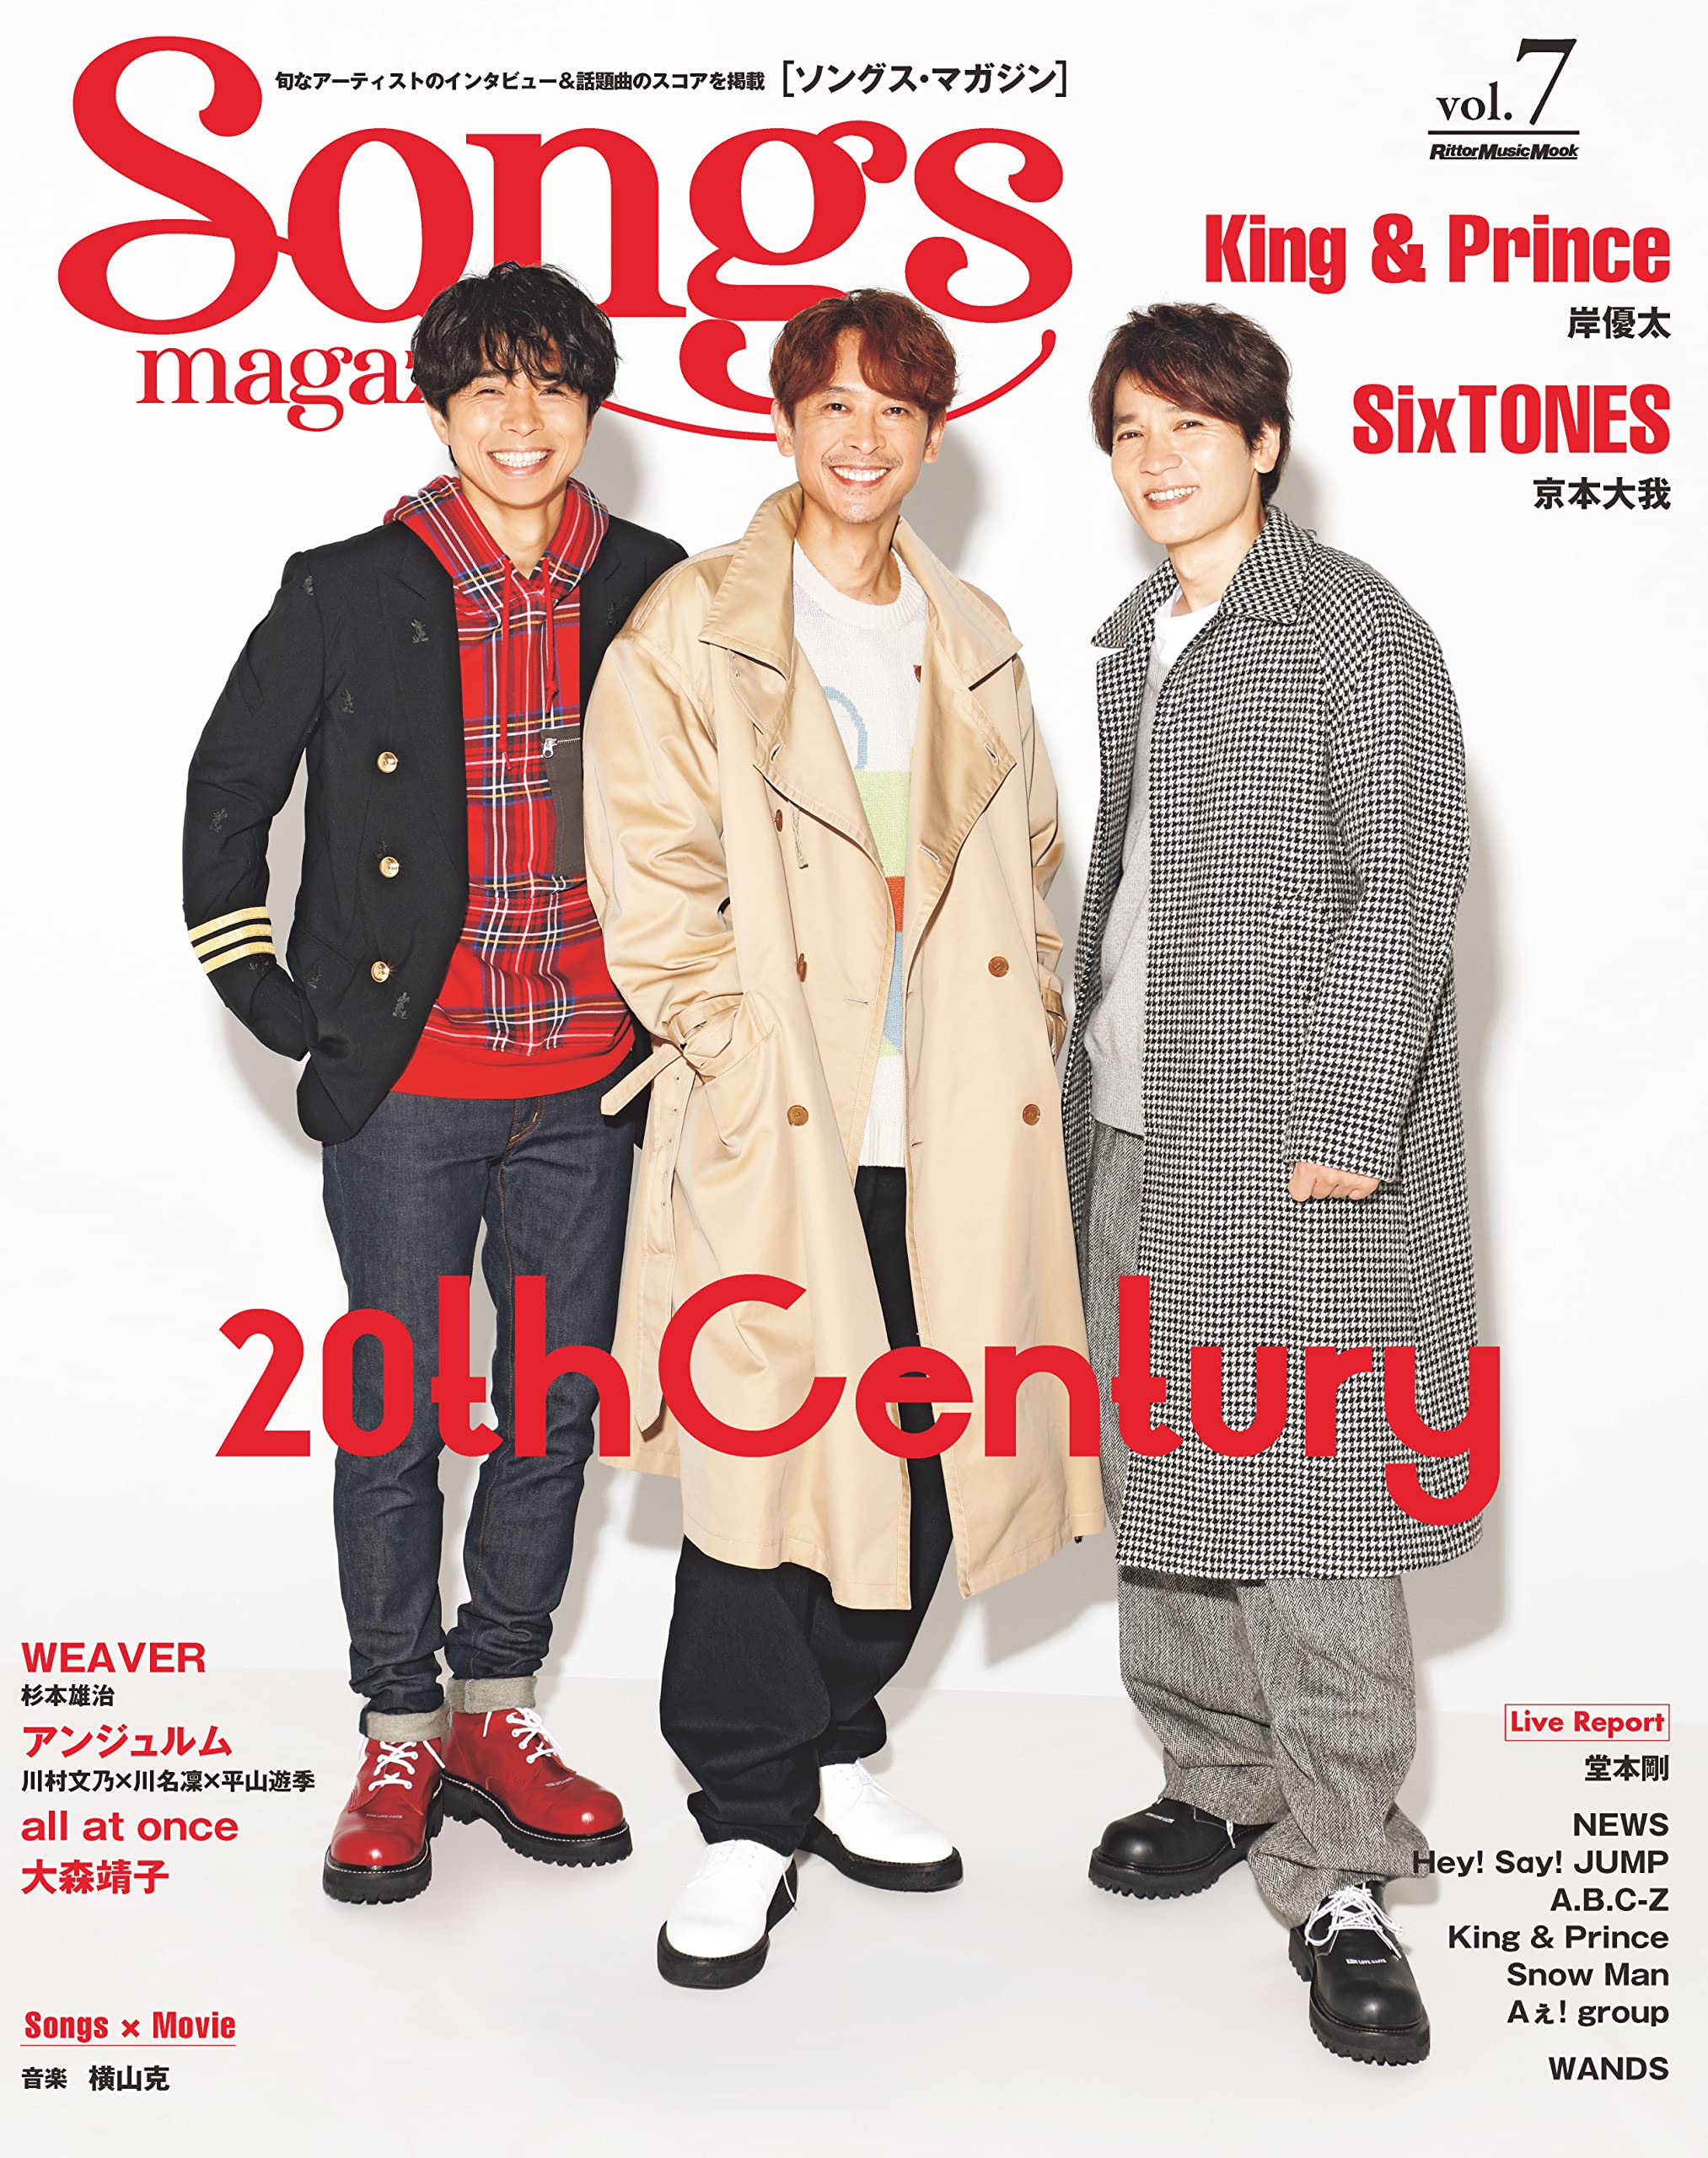 Songs magazine (ソングス·マガジン) vol.7 (リット-ミュ-ジック·ムック)